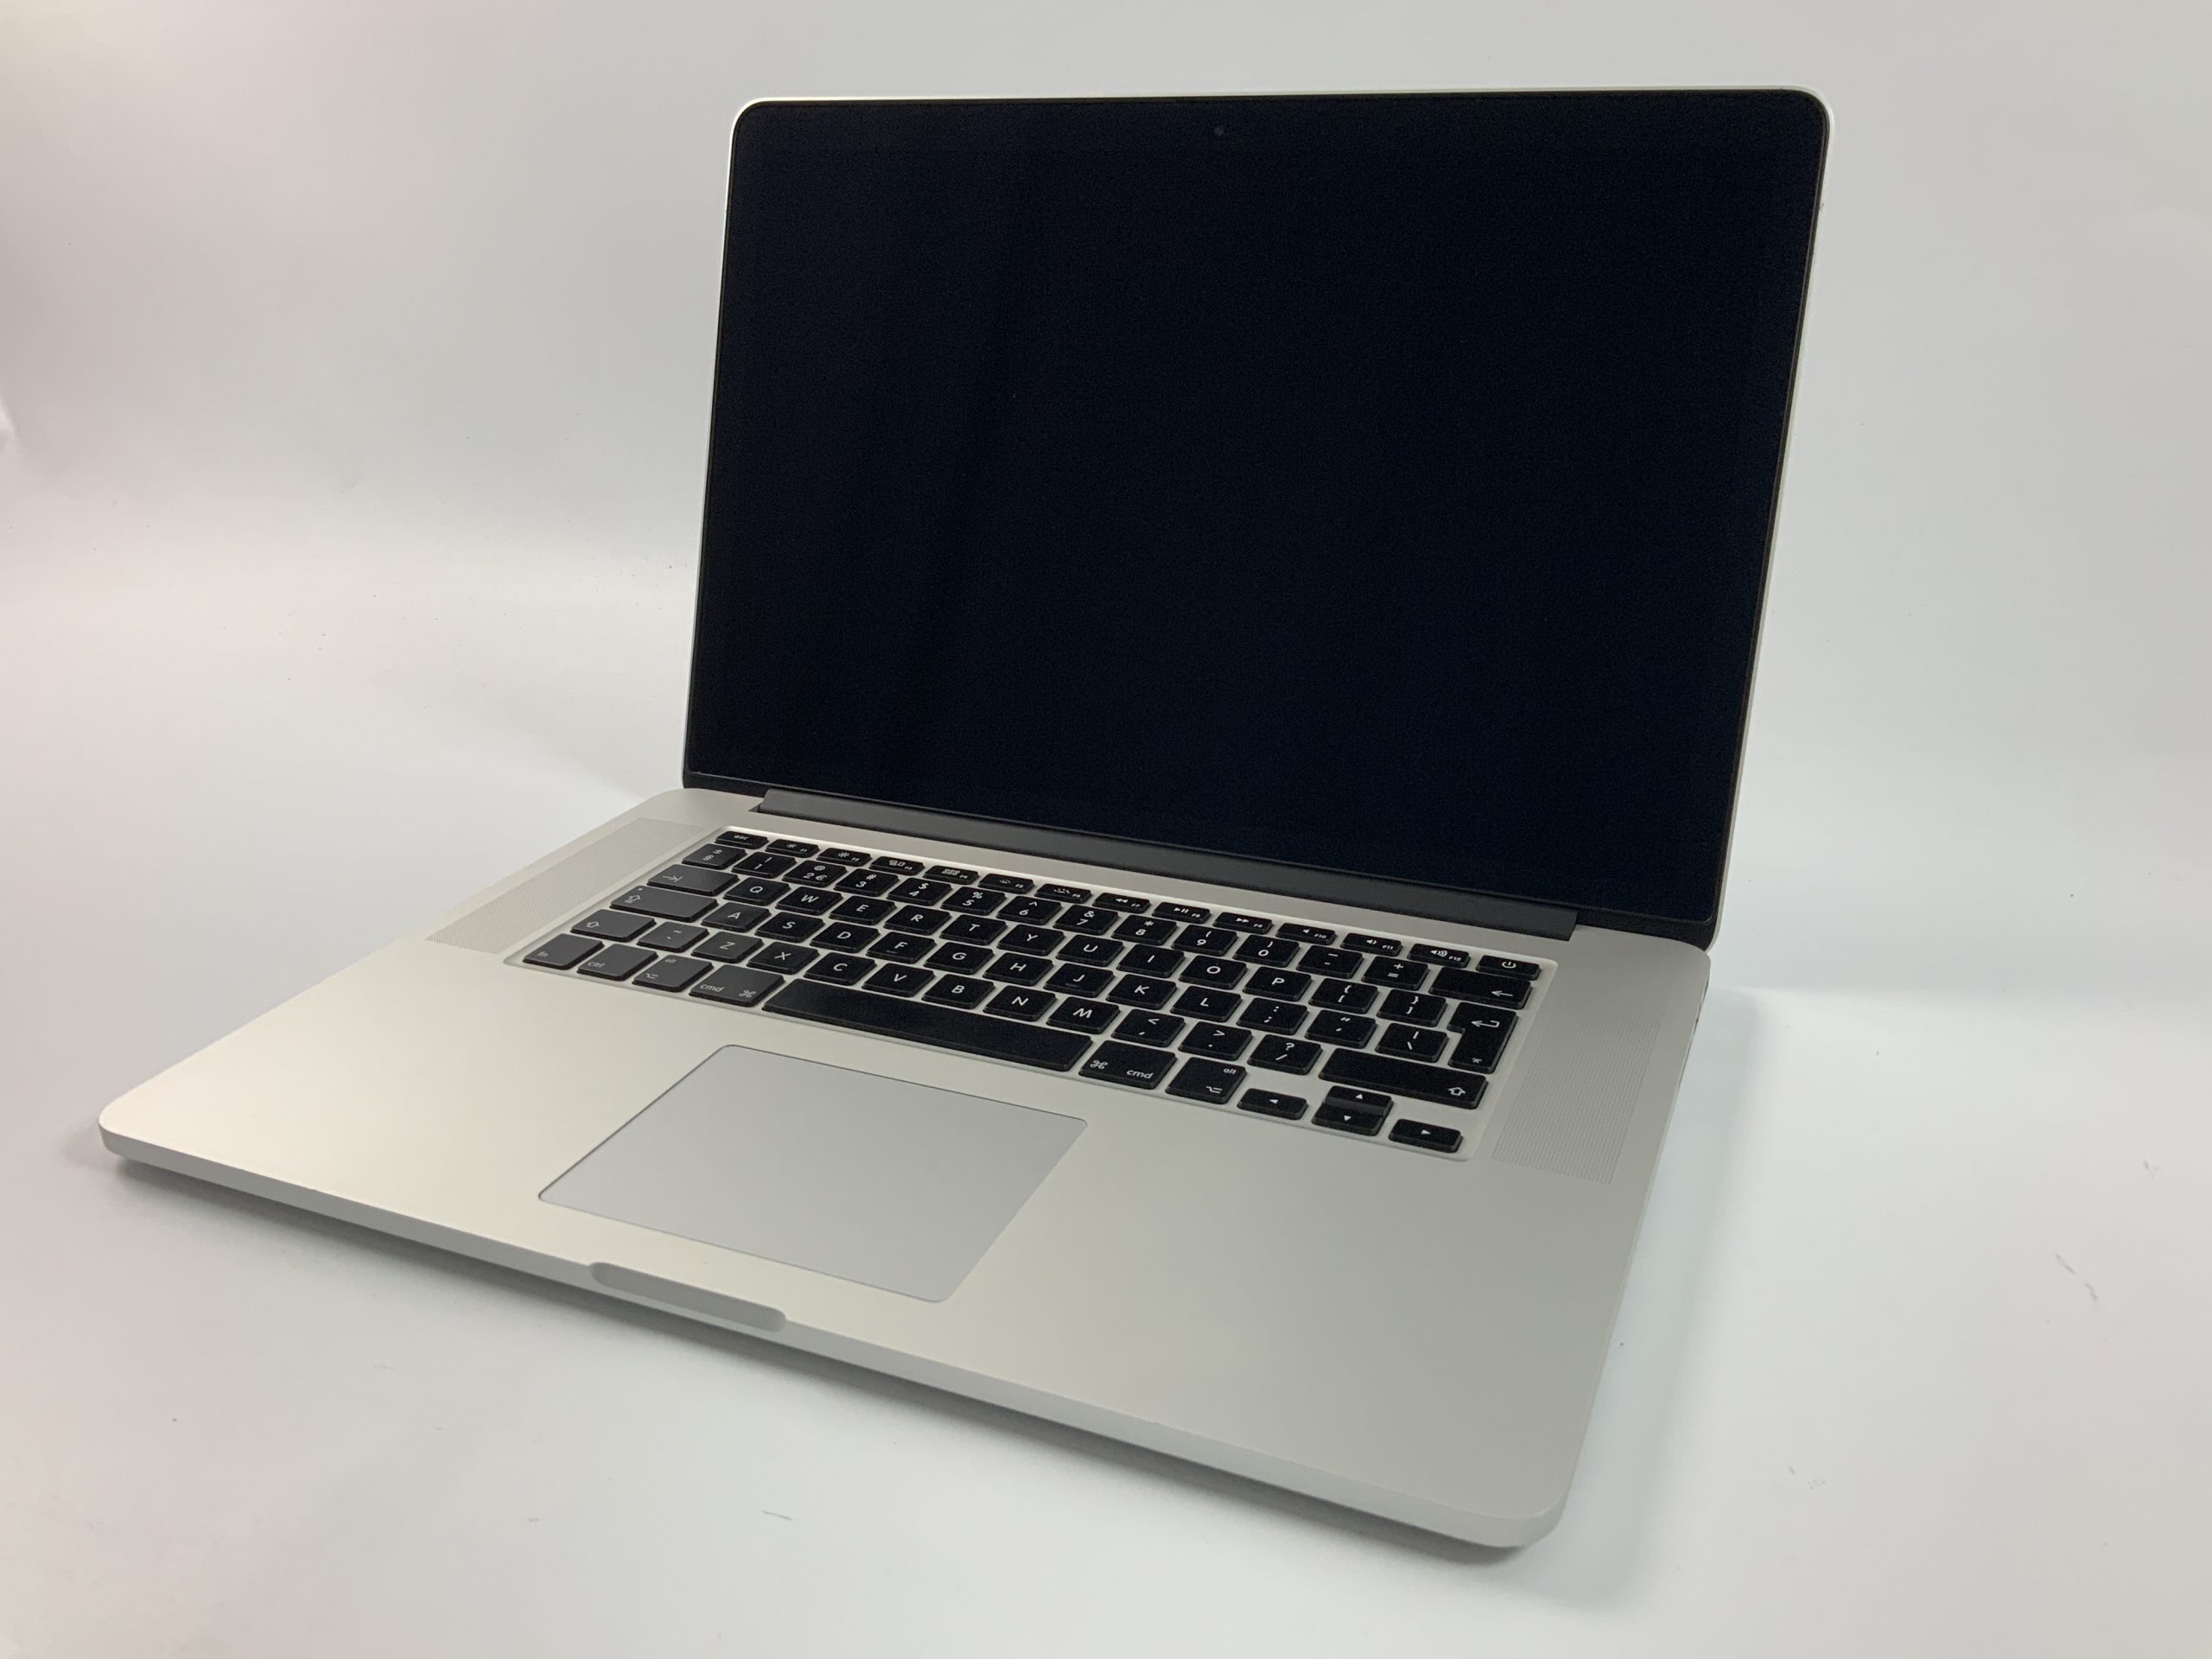 MacBook Pro Retina 15" Mid 2014 (Intel Quad-Core i7 2.5 GHz 16 GB RAM 512 GB SSD), Intel Quad-Core i7 2.5 GHz, 16 GB RAM, 512 GB SSD, bild 1